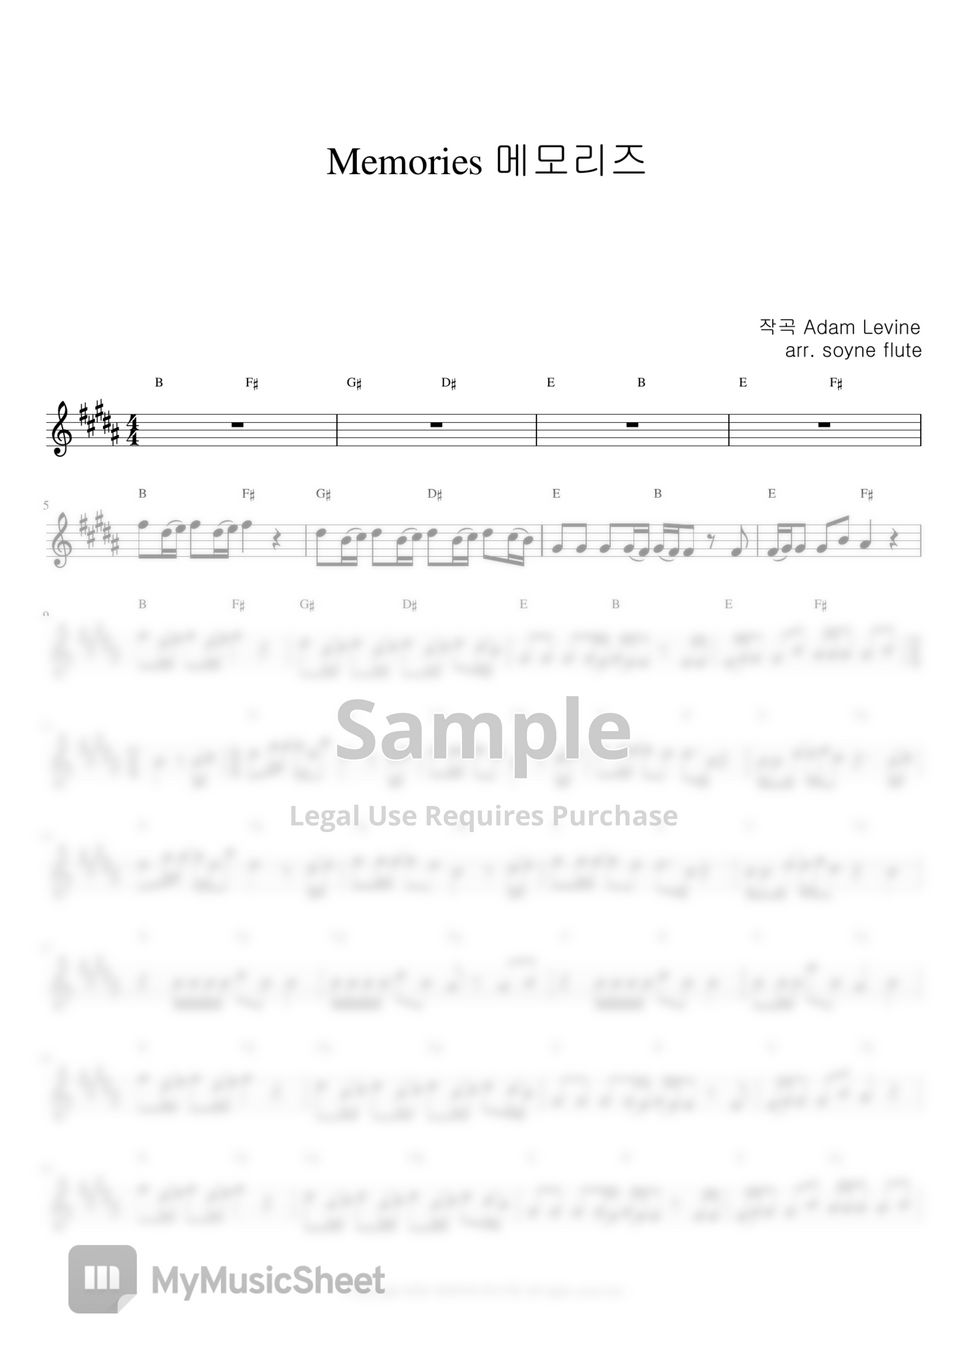 Maroon5 - Memories (Flute Sheet Music) by sonye flute